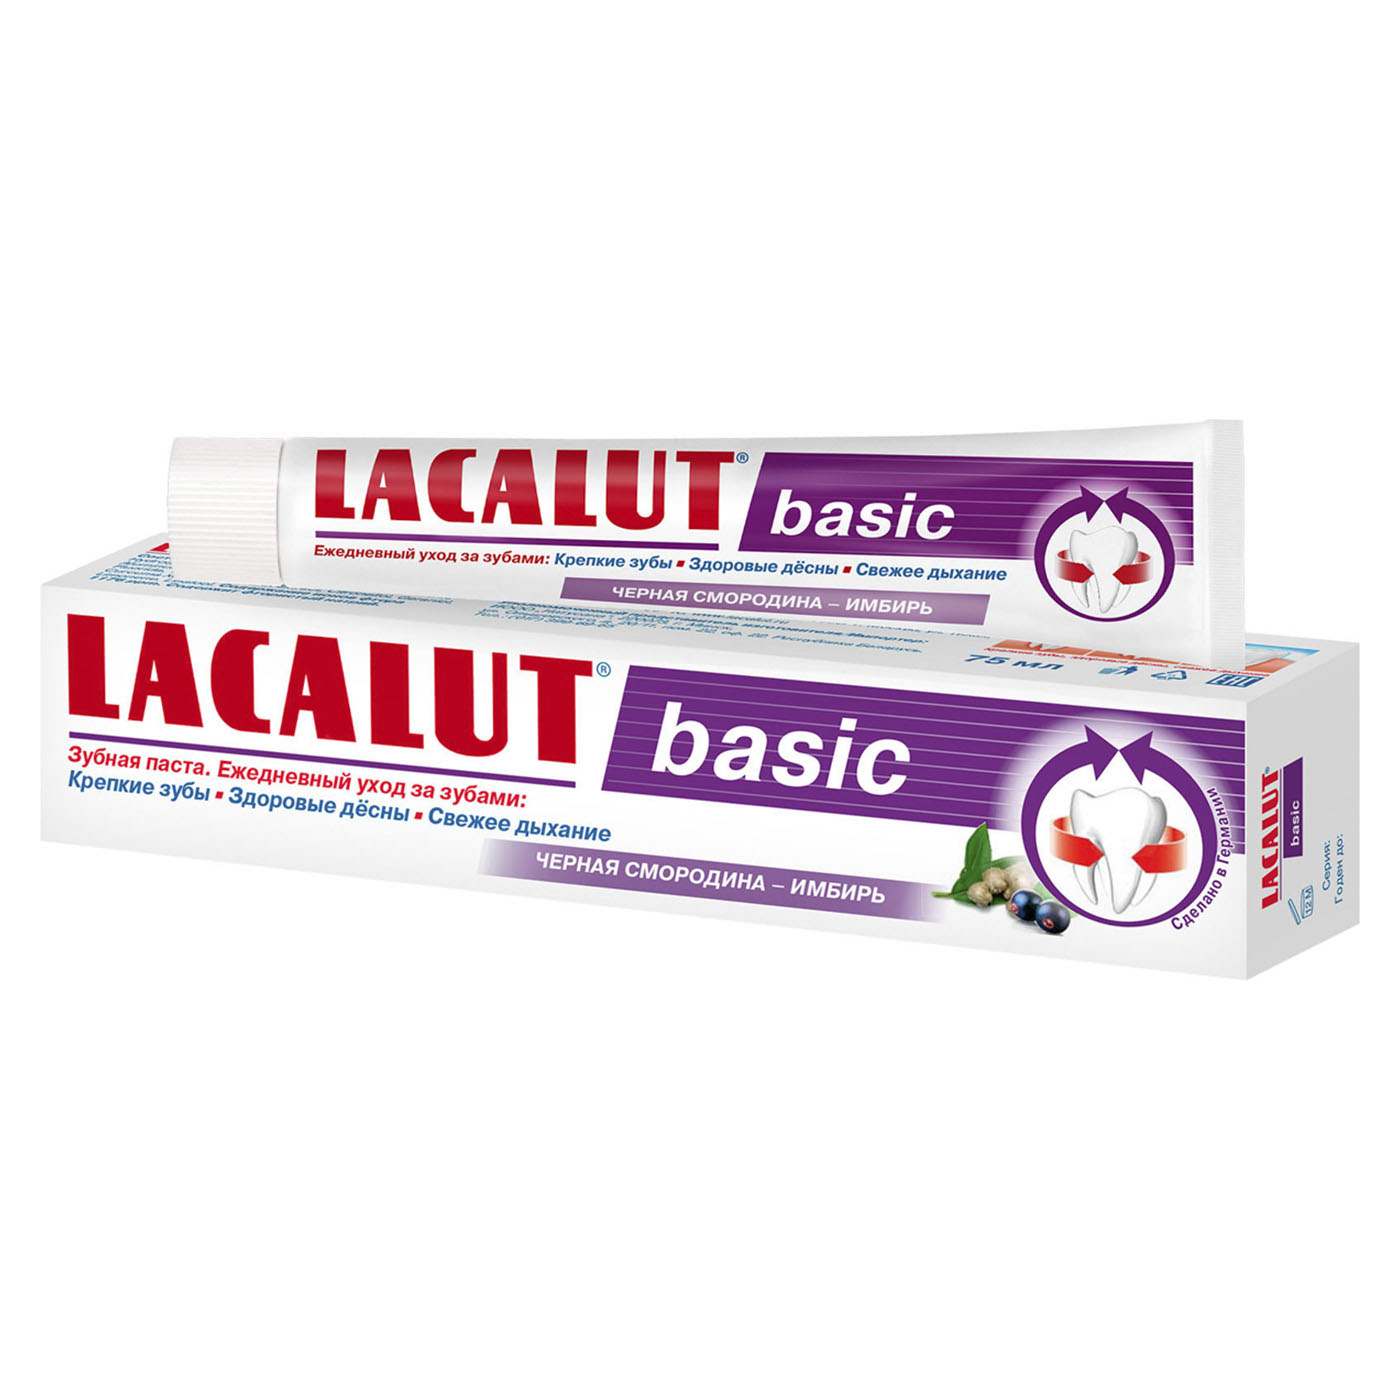 Lacalut Зубная паста Бейсик черная смородина-имбирь (Lacalut